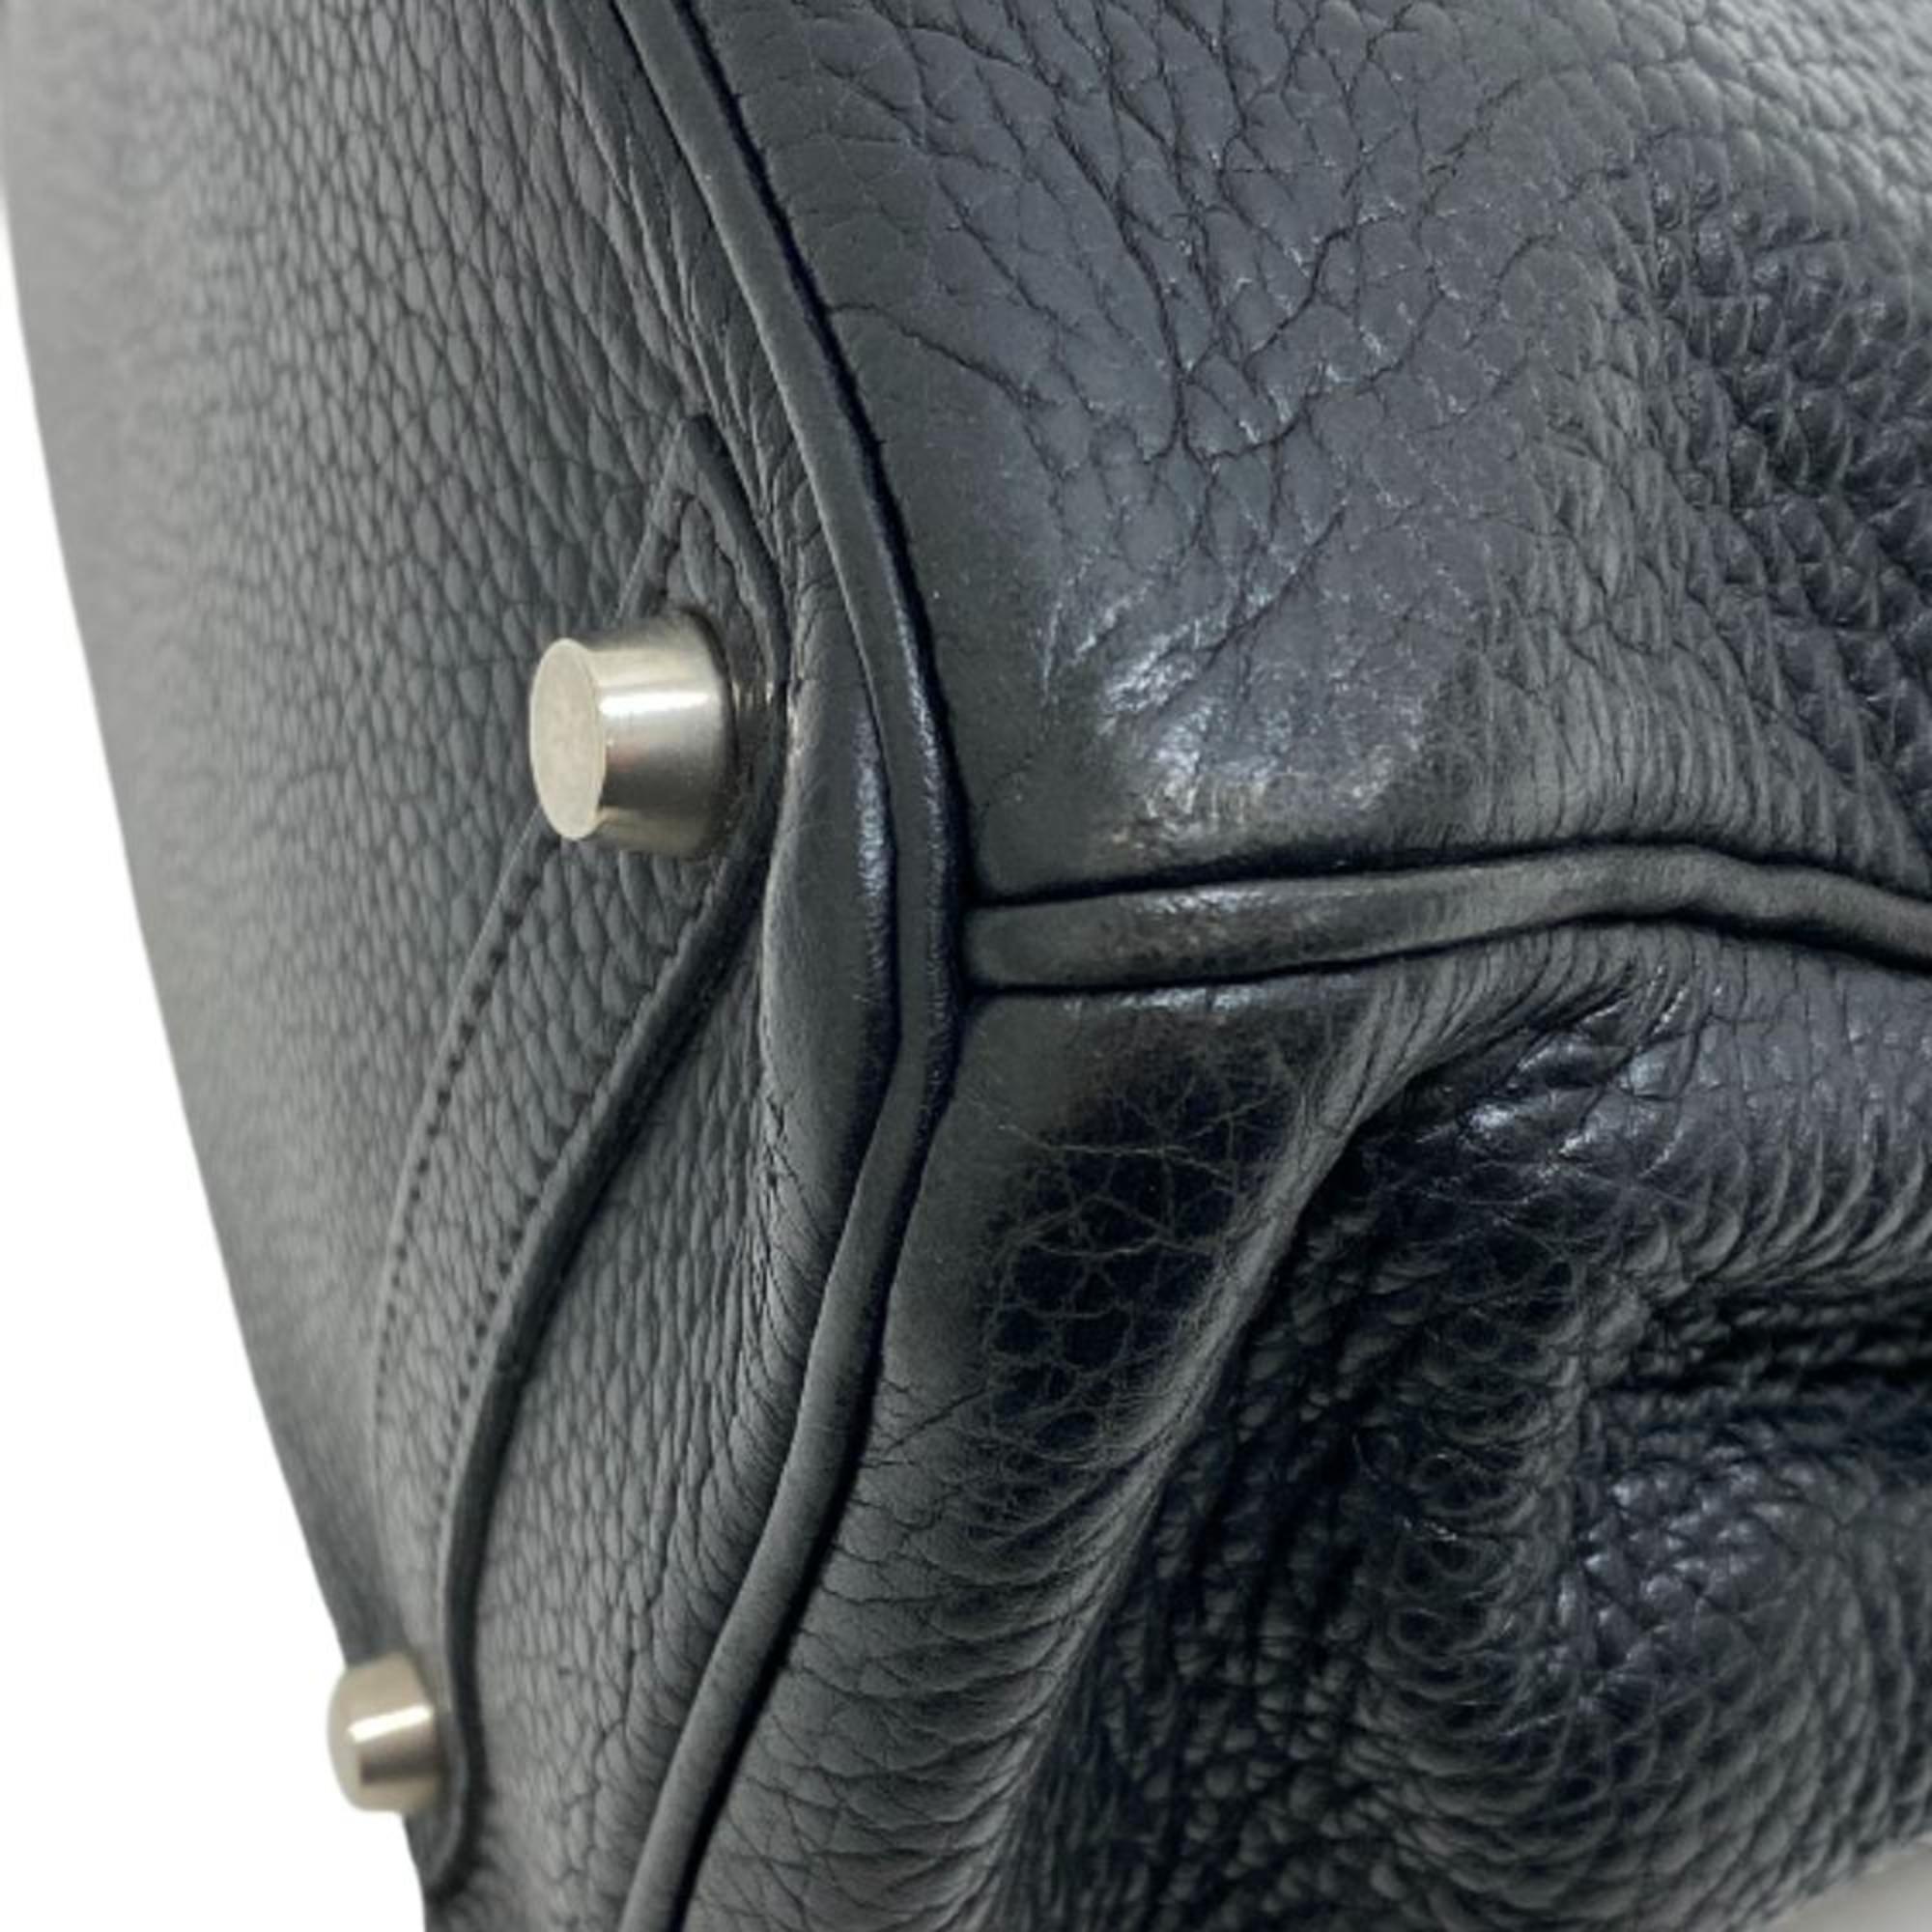 HERMES □I Birkin 30 Handbag Black Ladies Z0005504